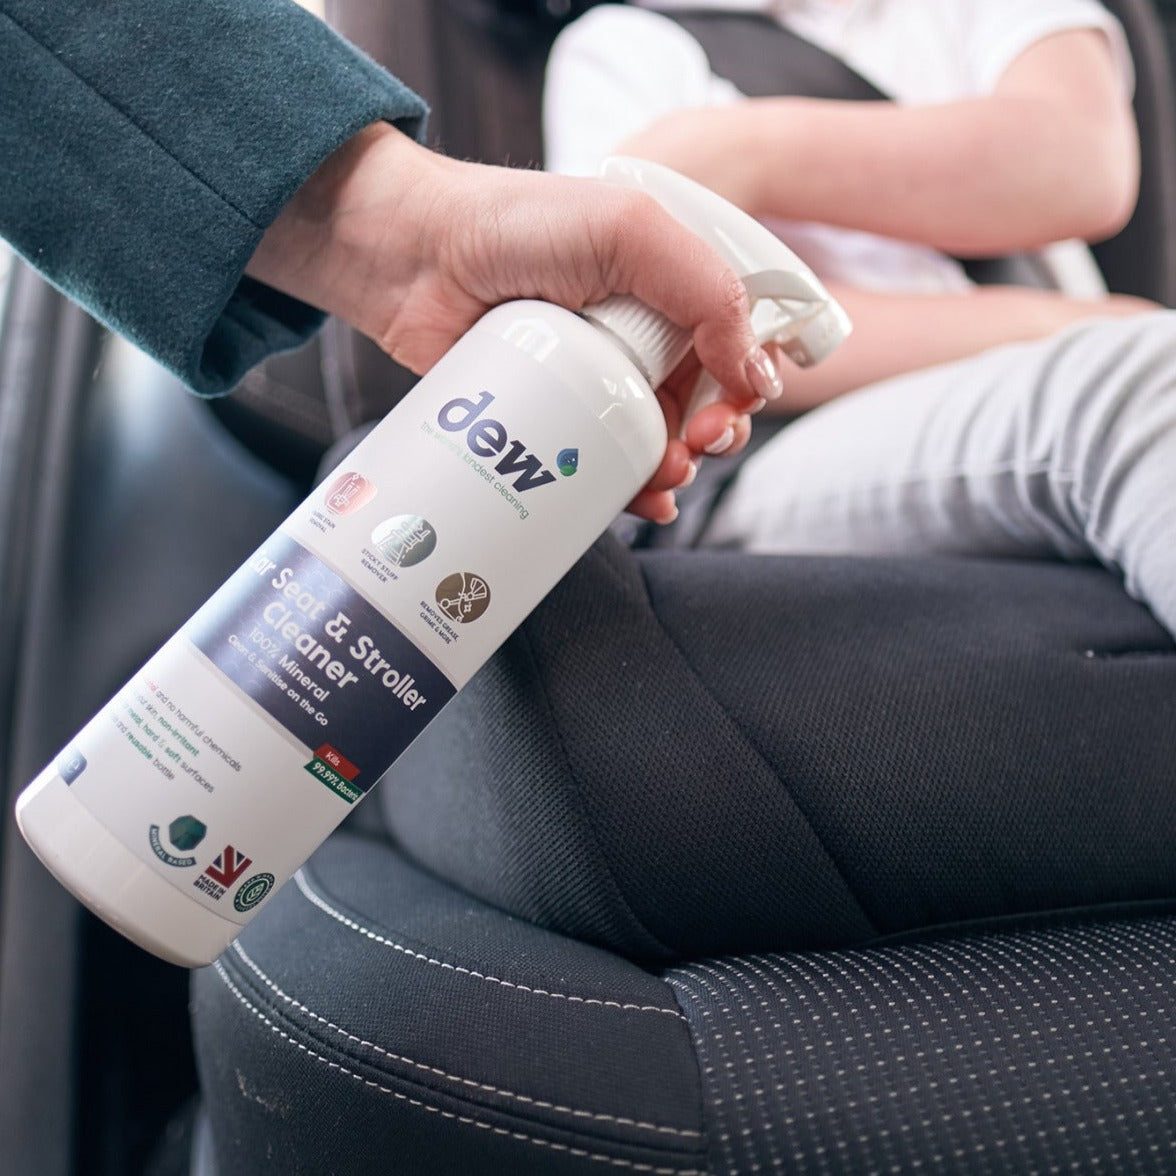 Dew: Mesure de nettoyage pour les sièges d'auto et les chariots de garde d'enfants 500 ml